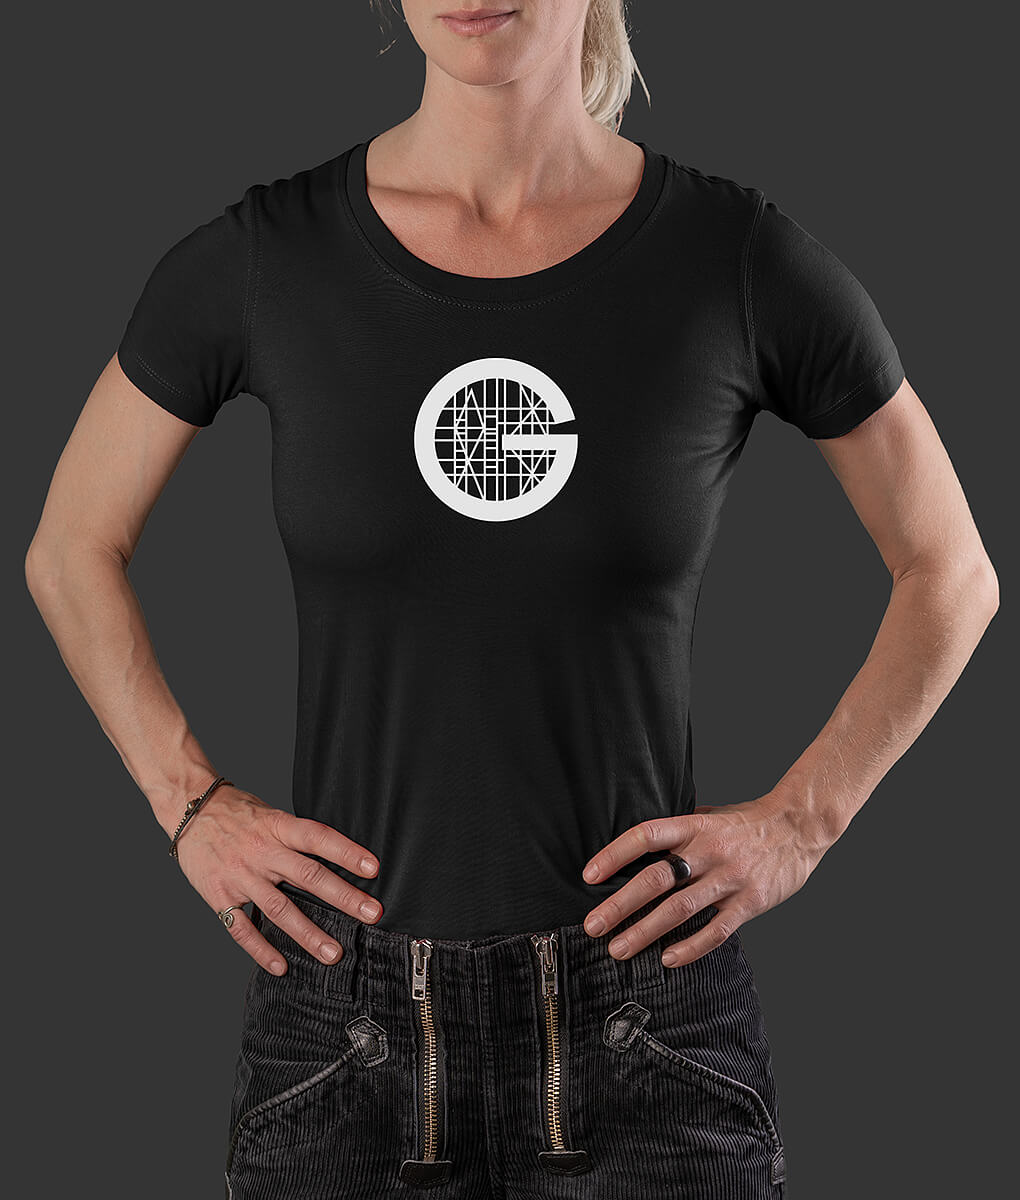 T-Shirt Louisa Gerstbauer klassisch Brust